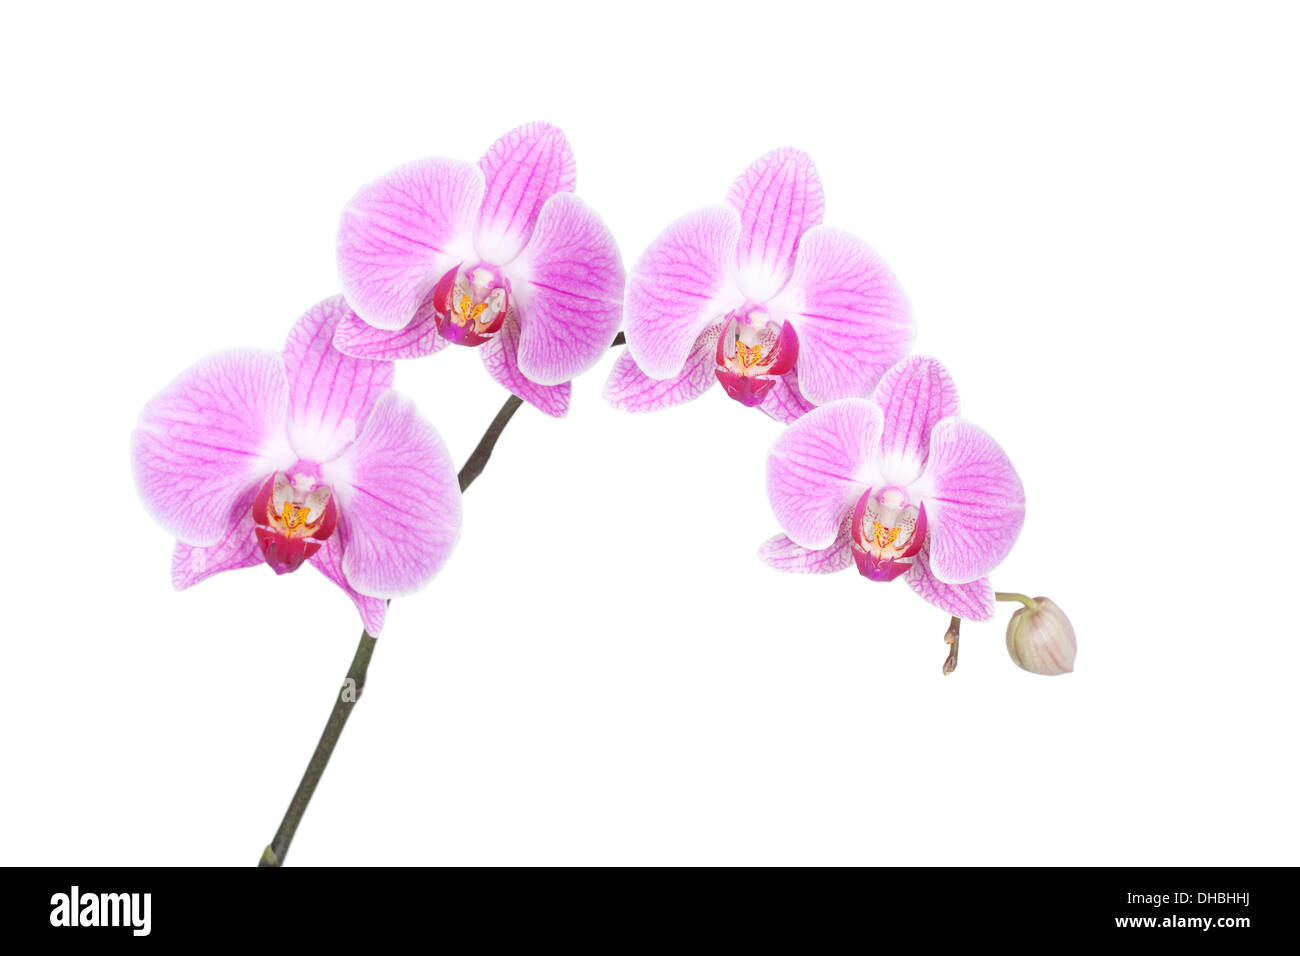 Rosa Phalaenopsis Orchidee isoliert auf weißem Hintergrund mit geringen Schärfentiefe. Stockfoto